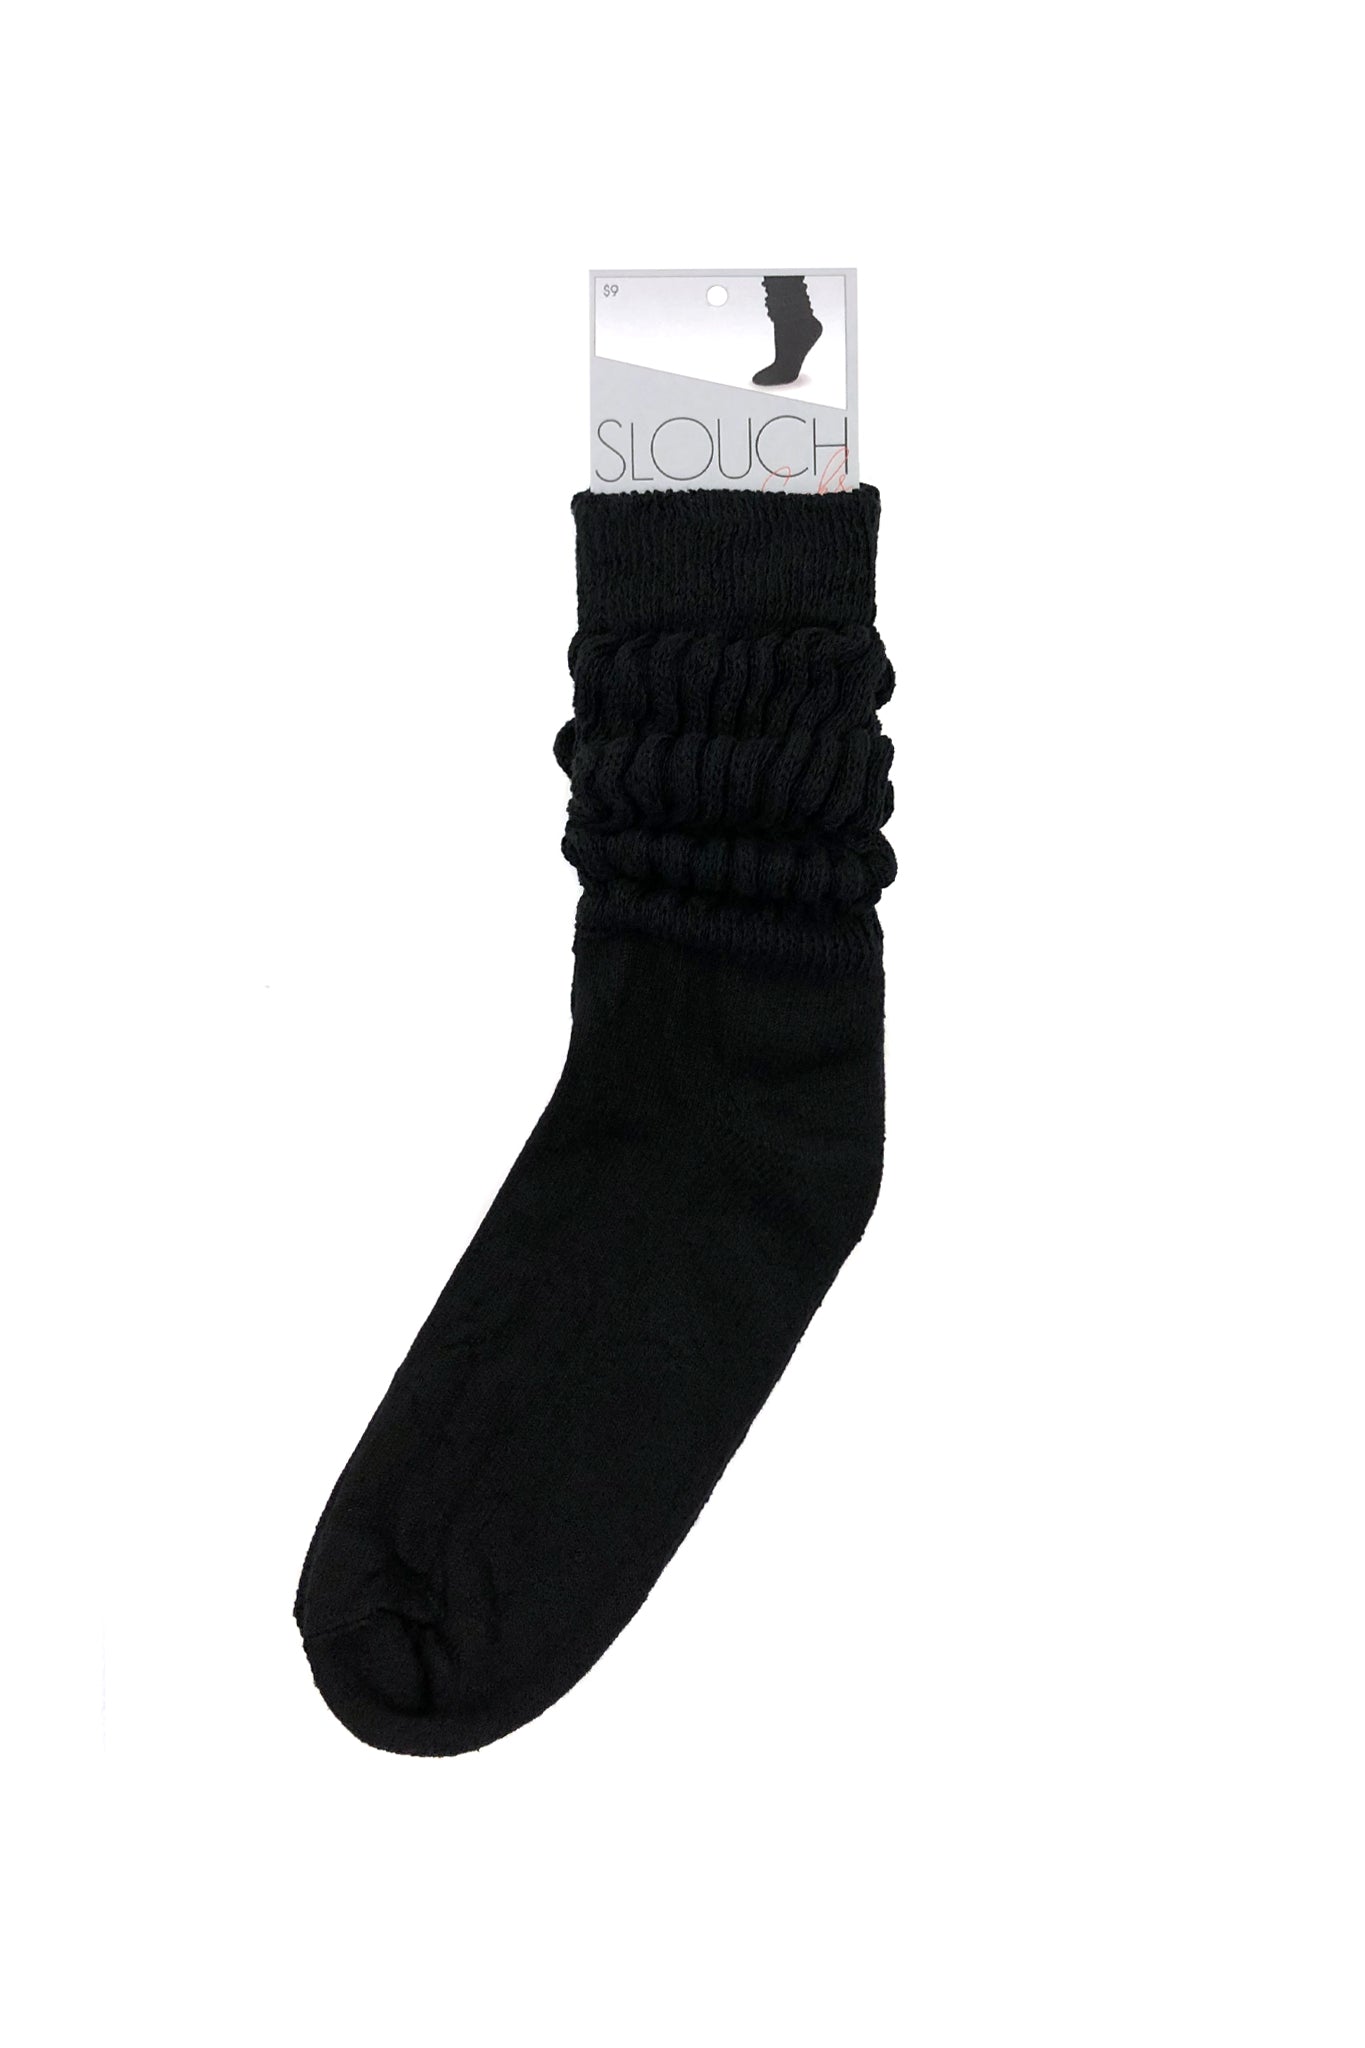 Slouch Socks, Black